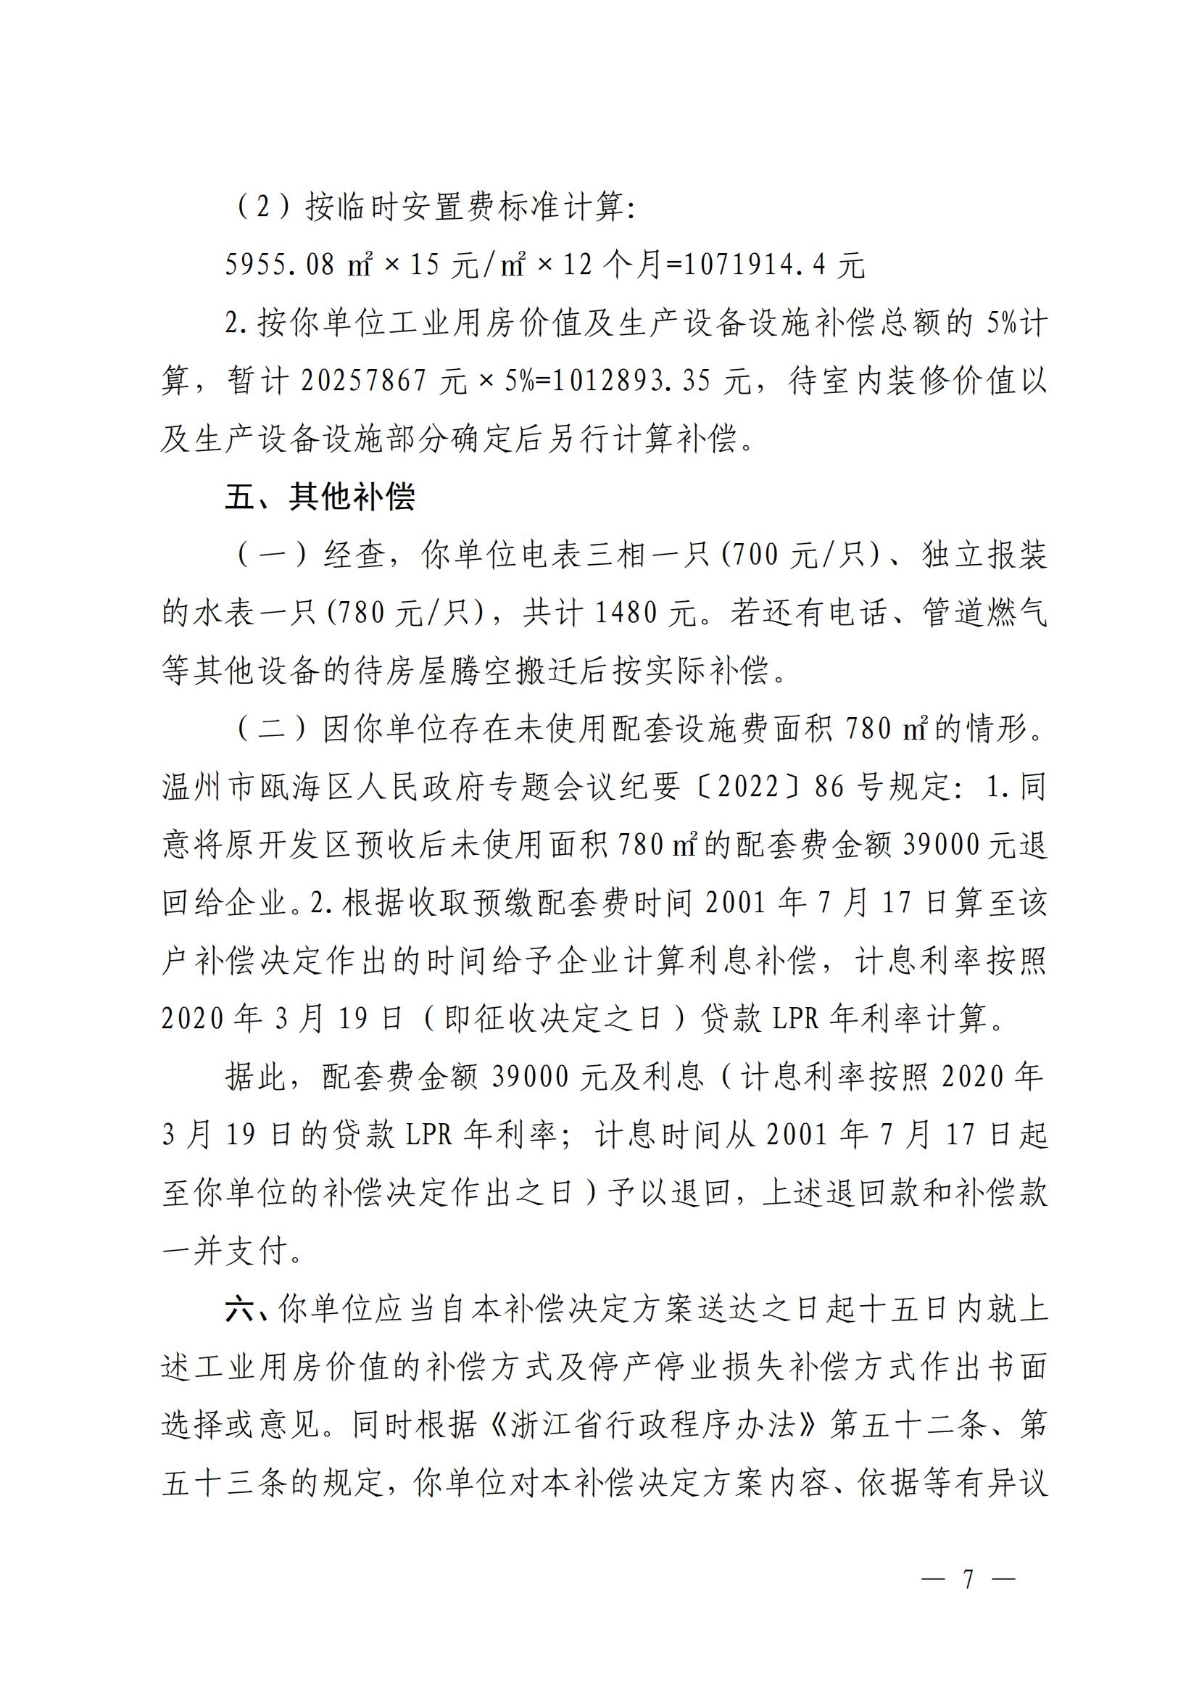 关于对温州市瓯海鹿达包装机械厂房屋的补偿决定方案_06.jpg